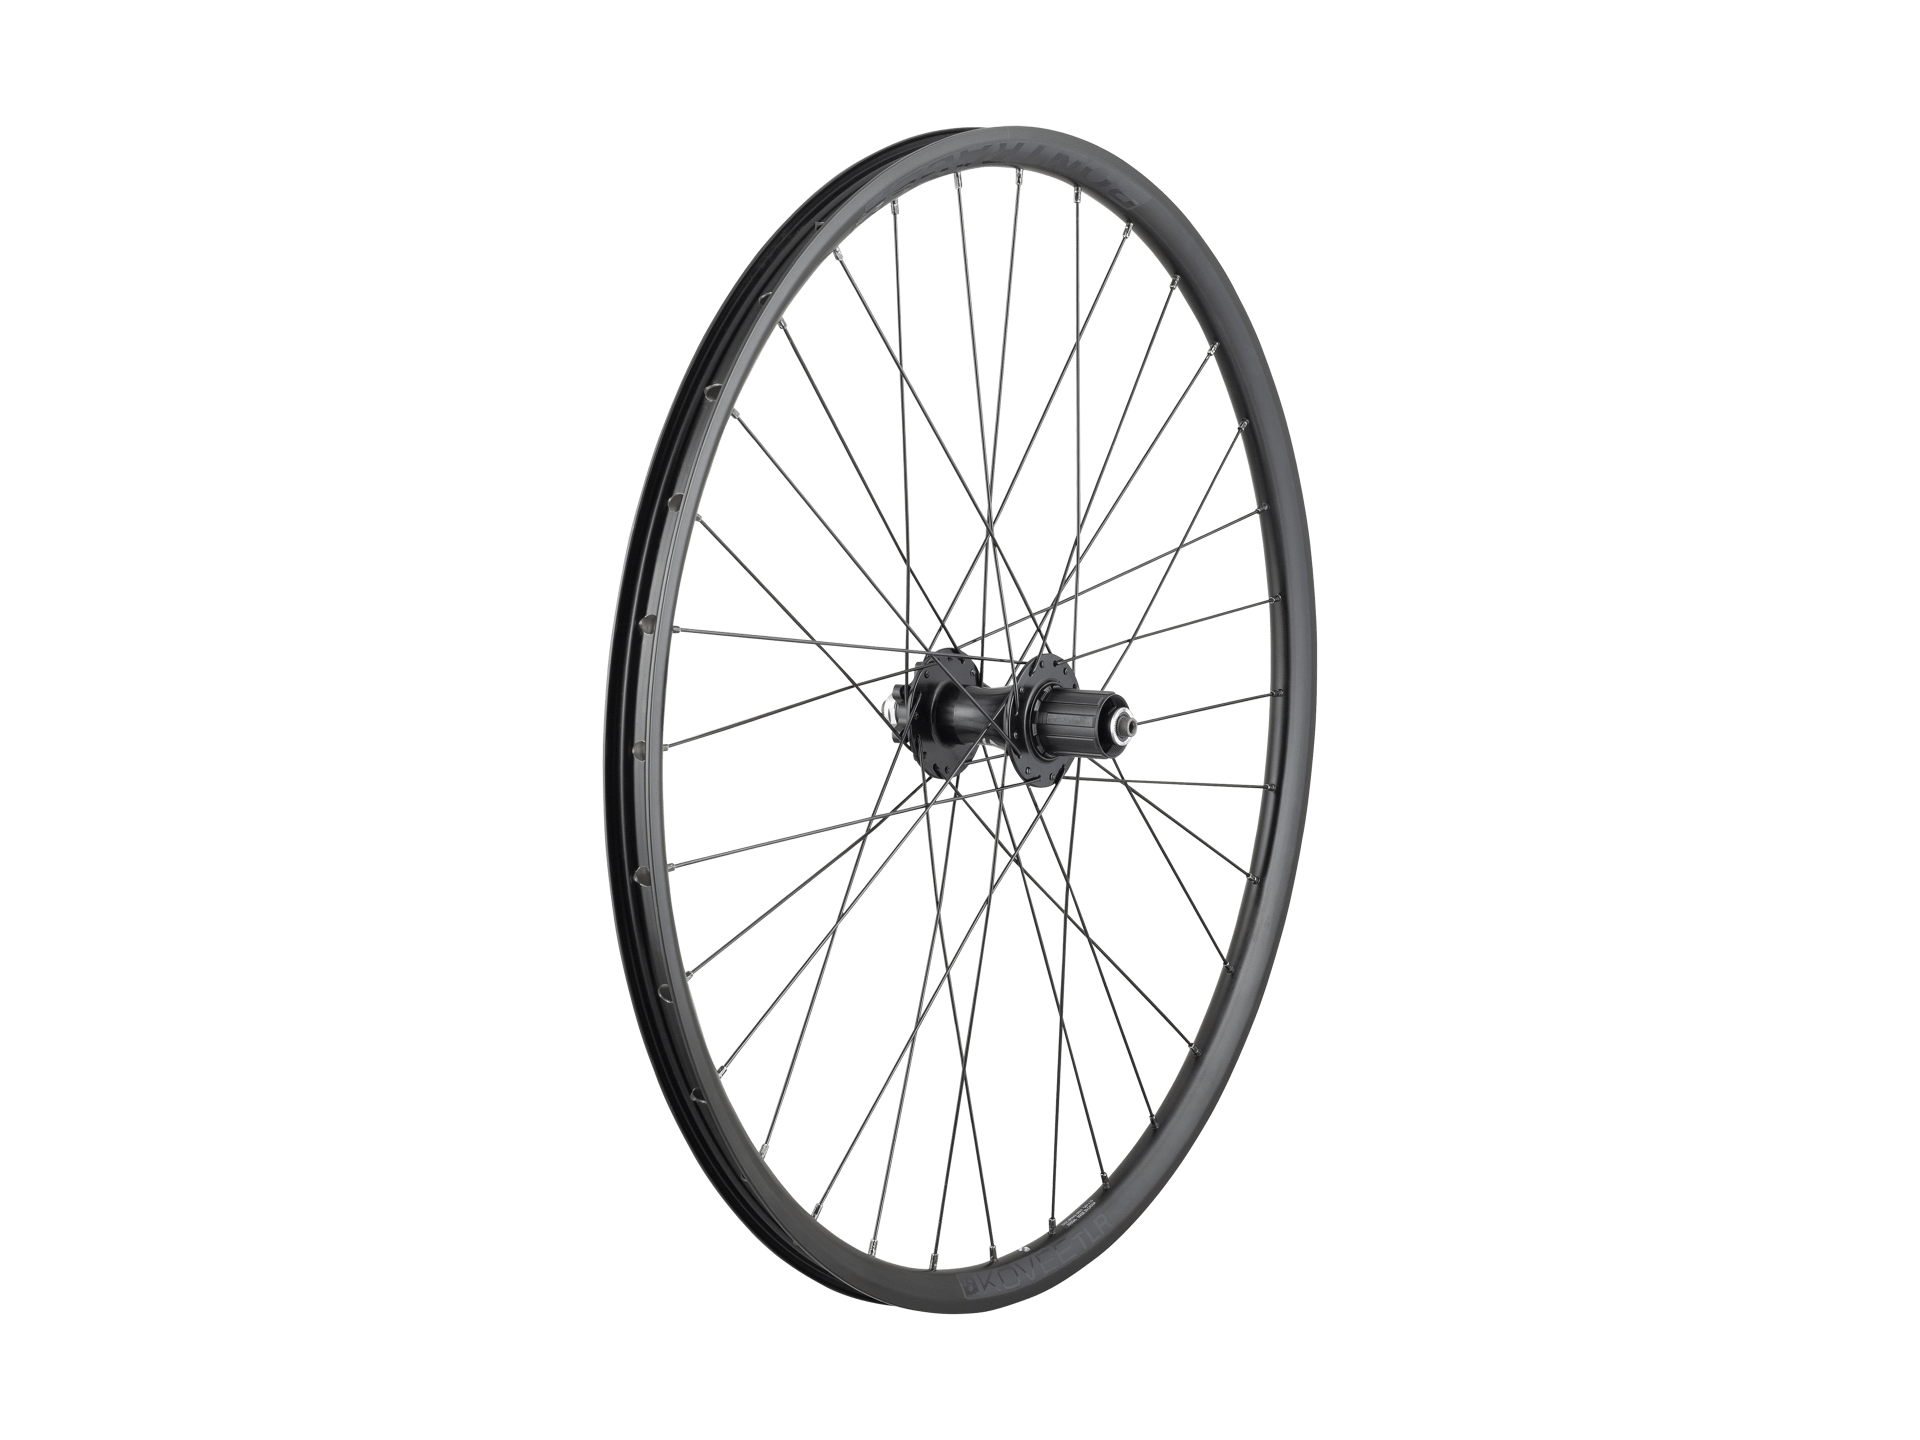 Bontrager Kovee TLR Boost141 27.5'"' 6-Bolt Disc MTB Wheel